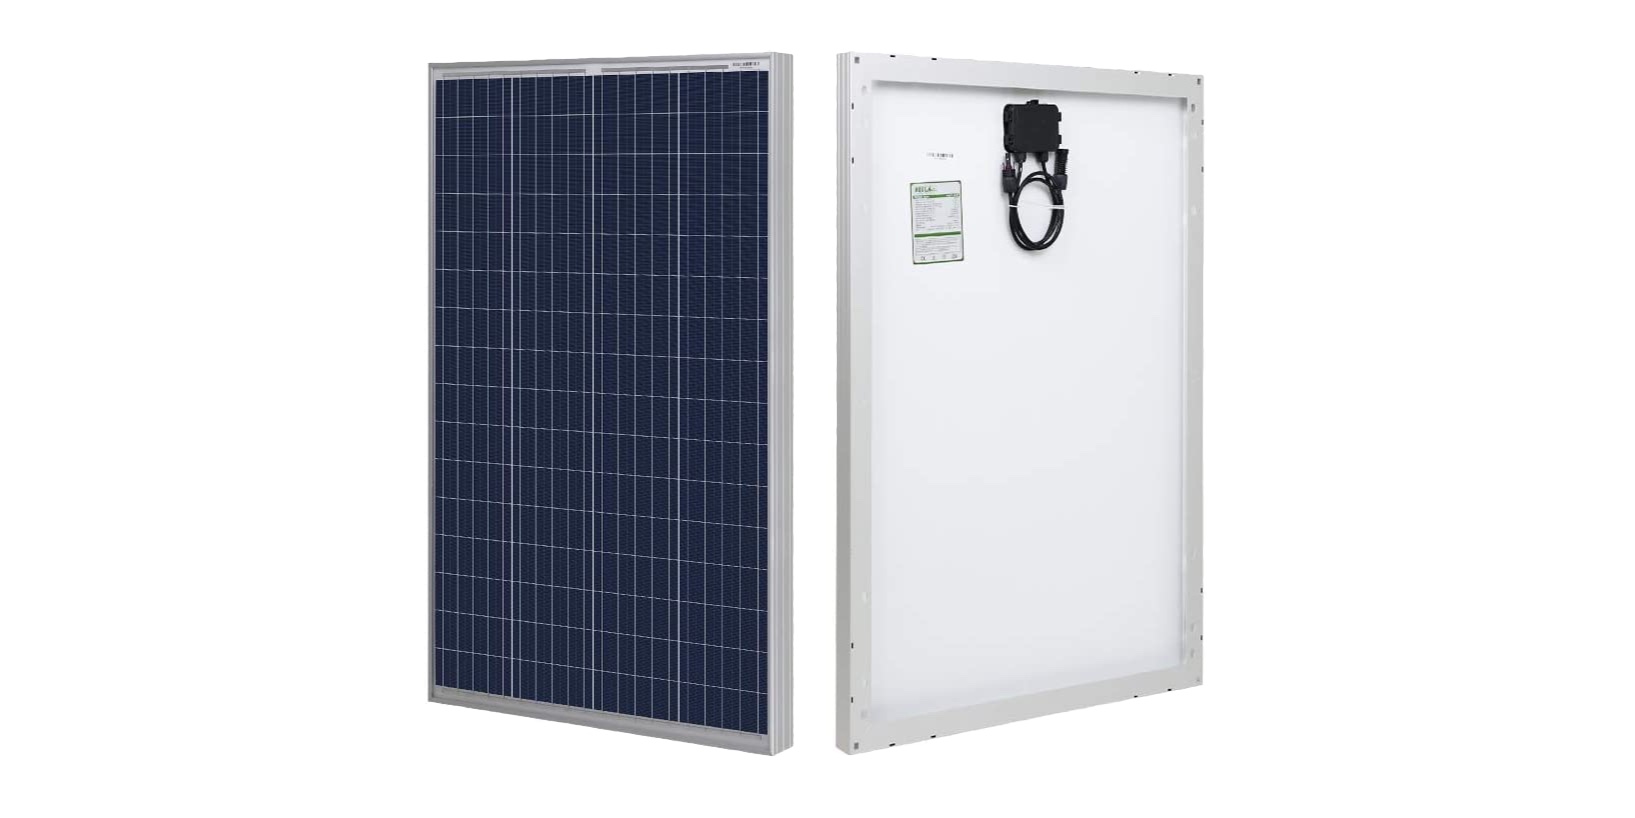 Green Deals: Portable 100W 12V Solar Panel $70 (Reg. $100), more